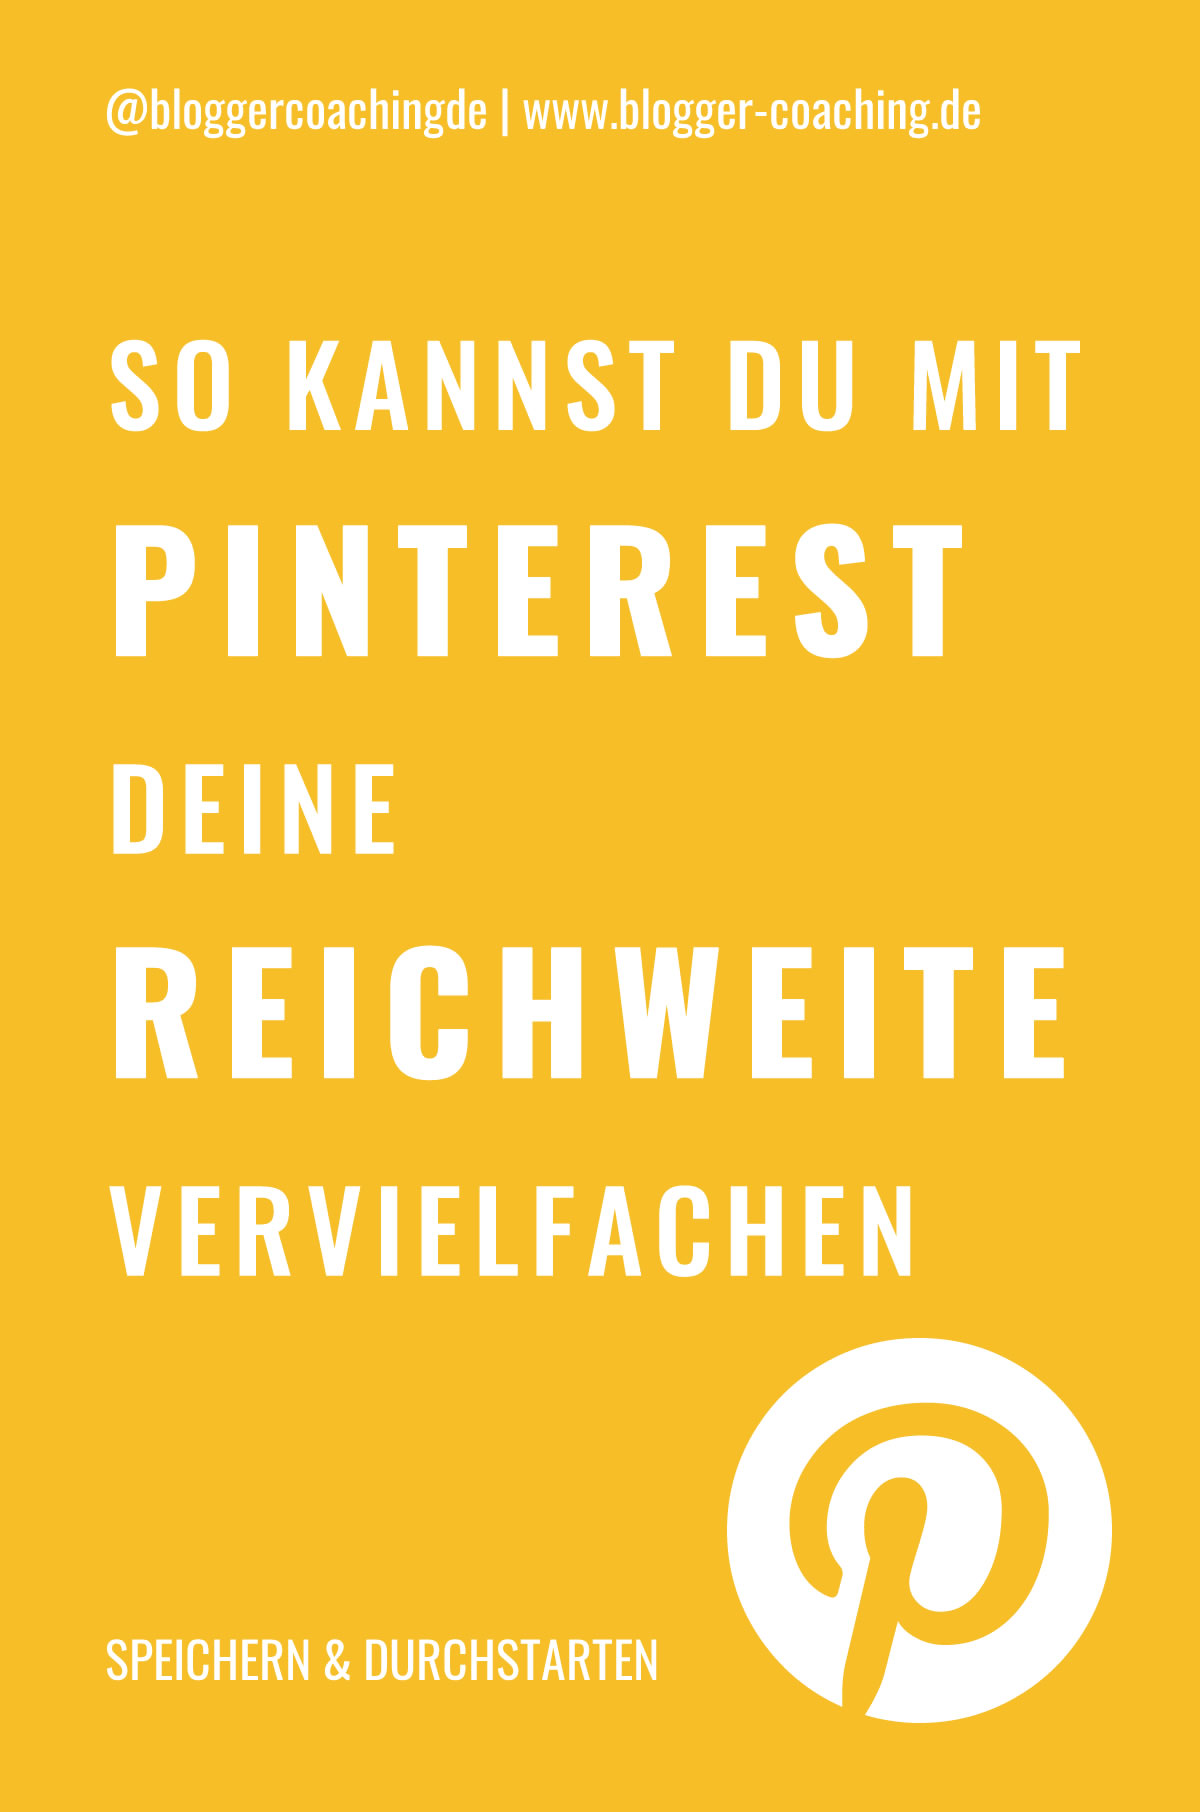 Pinterest SEO - 7 Tipps für ein besseres Ranking | Blogger-Coaching.de - Der Blog für Blogger